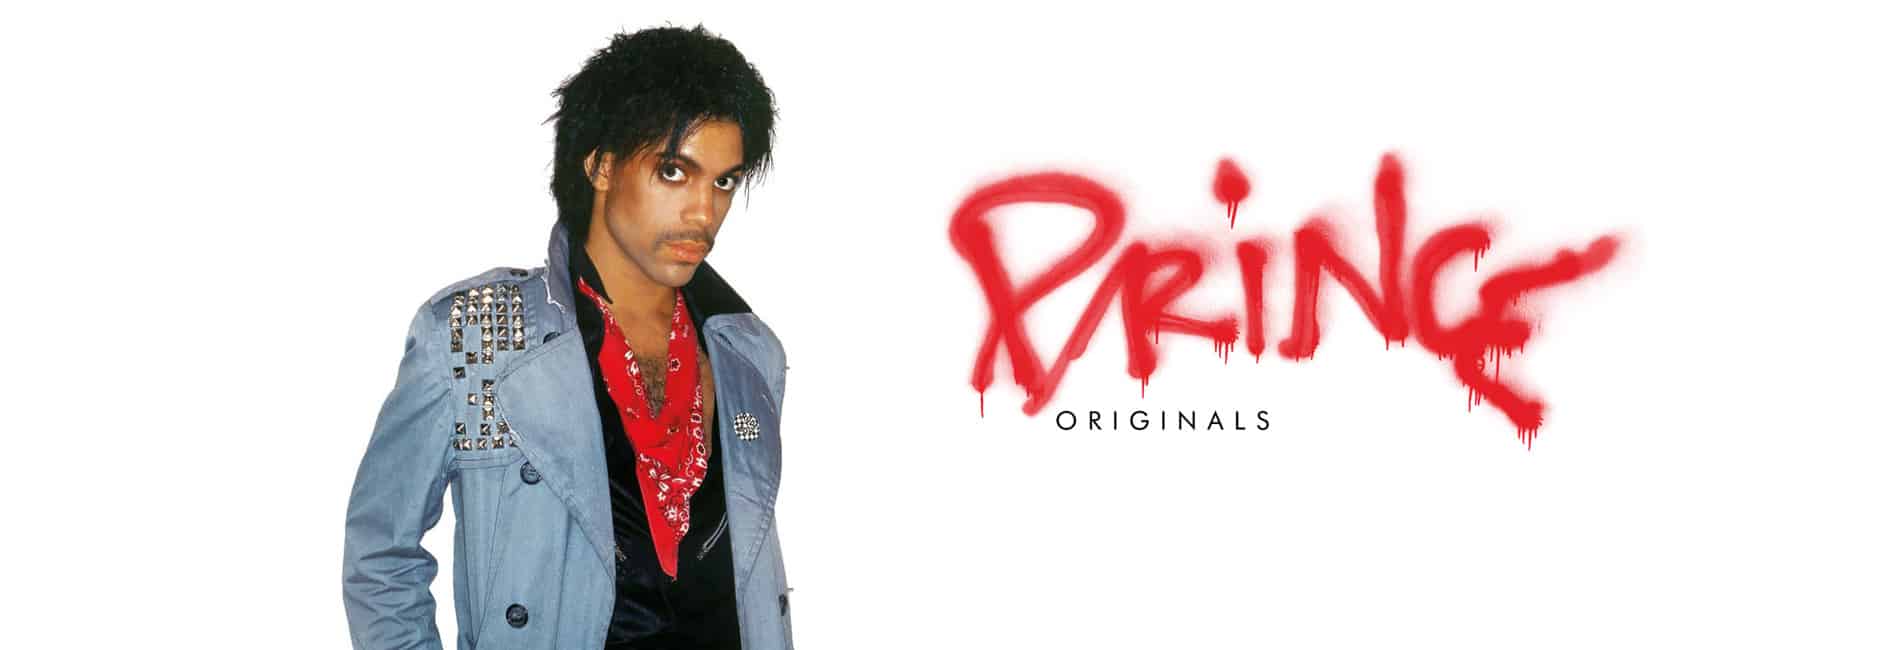 Prince Originals Cover